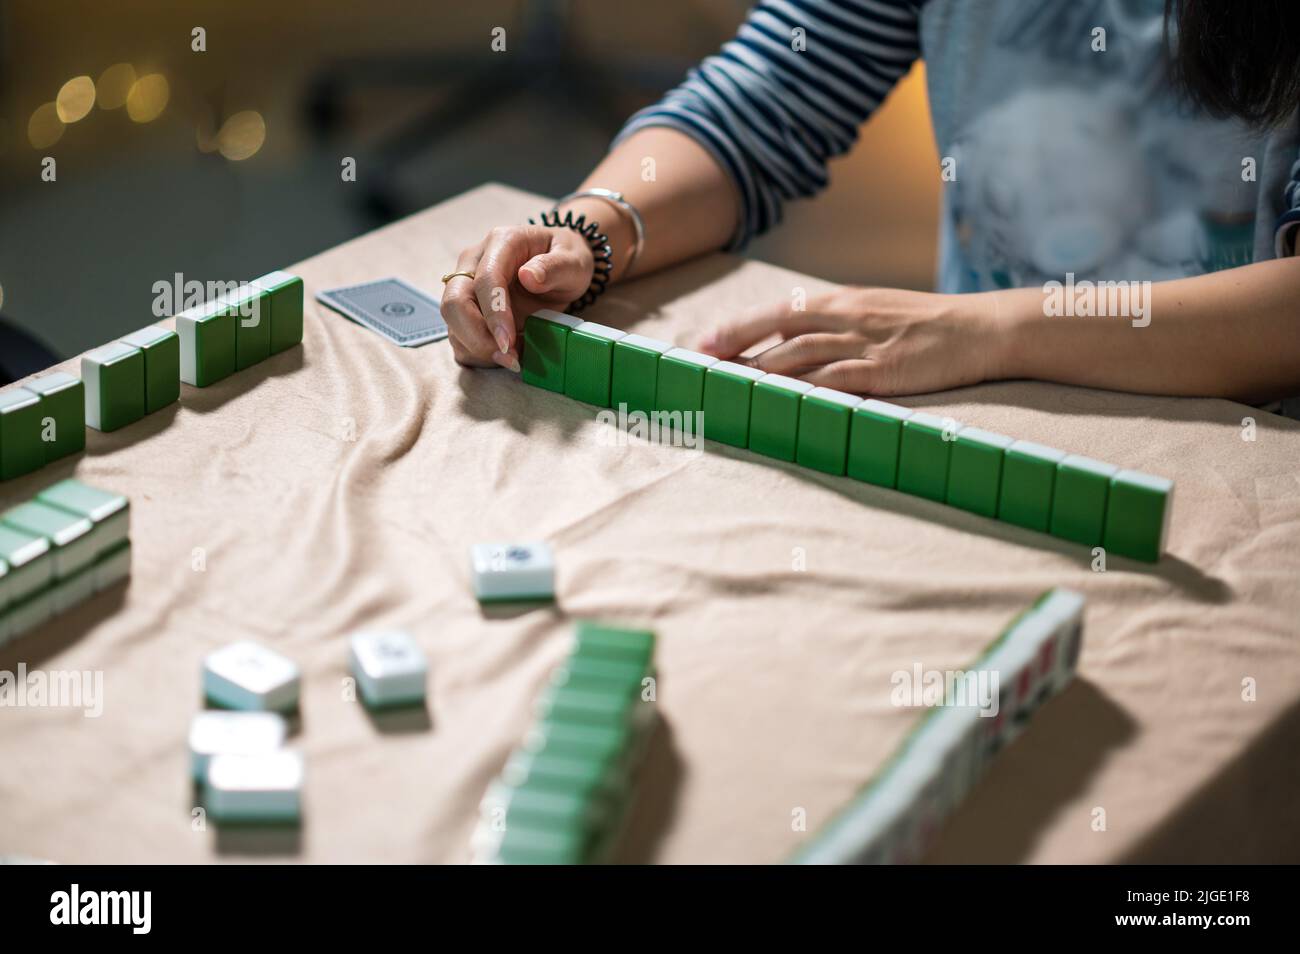 Weibliche Freunde spielen zu Hause Mahjong traditionelles chinesisches Brettspiel. Übersetzung: Kacheltext zeigt chinesische Zeichen für Zahlen von 1 bis 9 und si Stockfoto